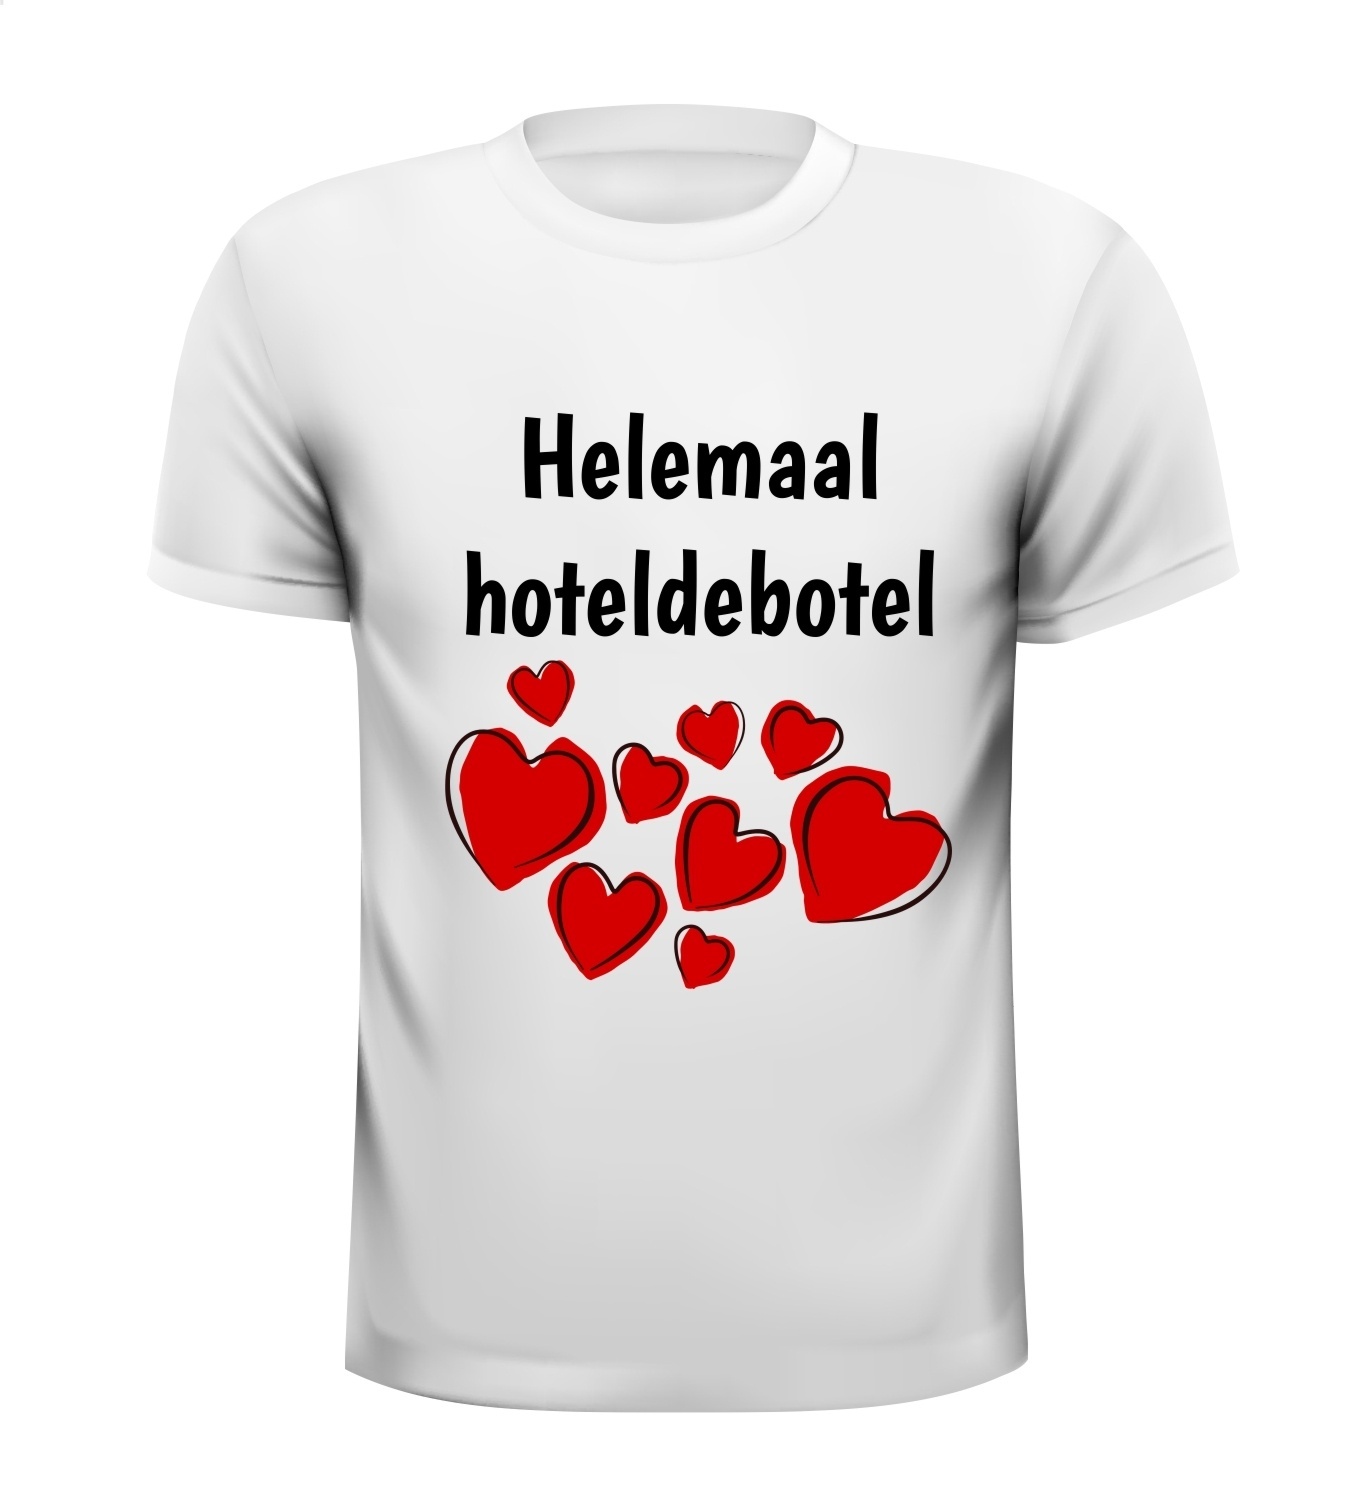 T-shirt helemaal hoteldebotel verliefd harten